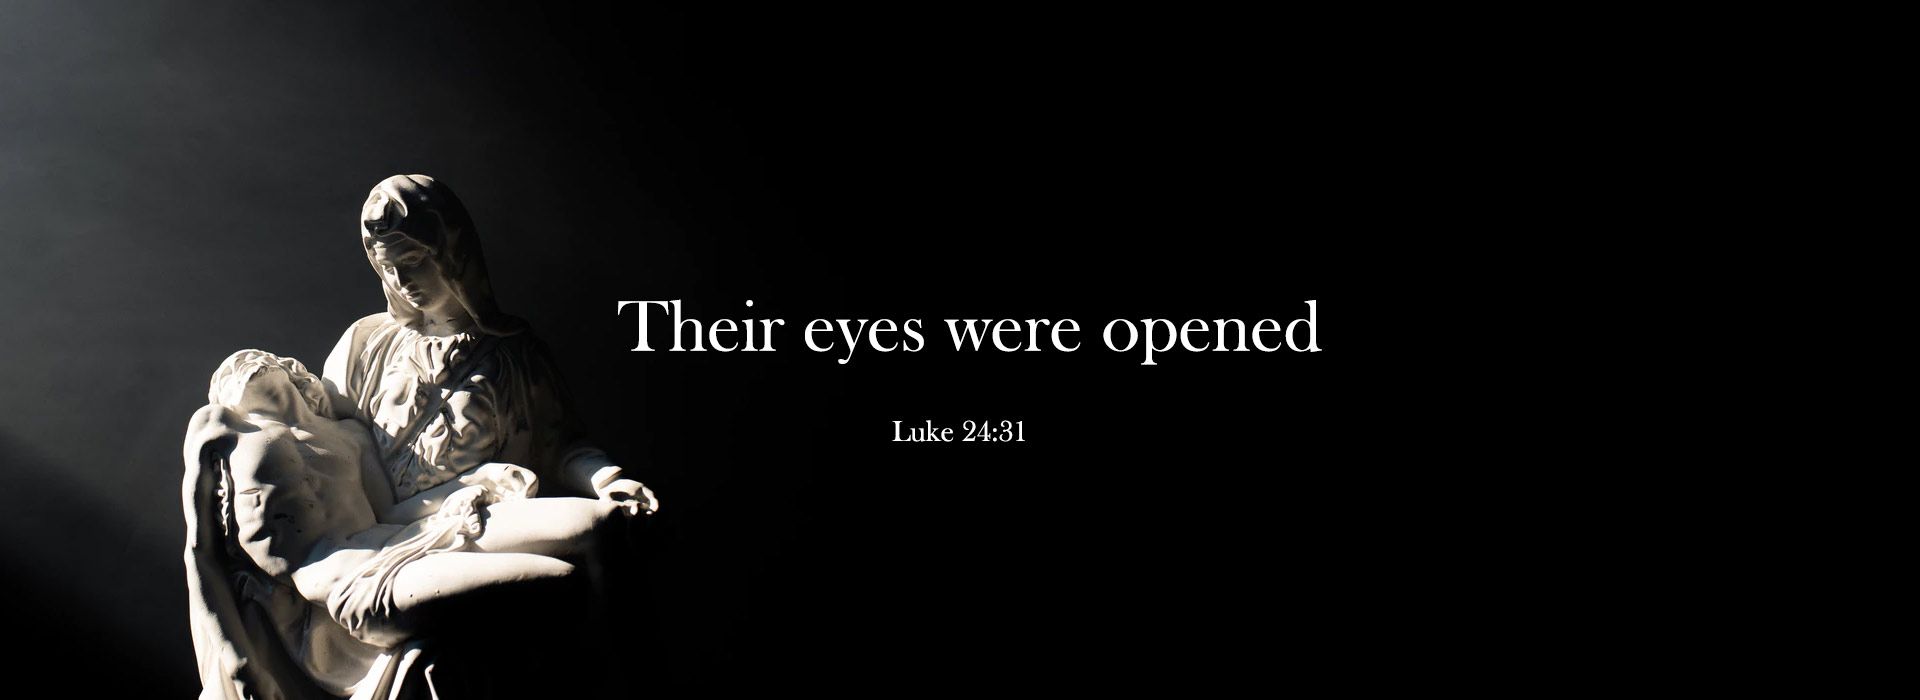 Luke 24:31